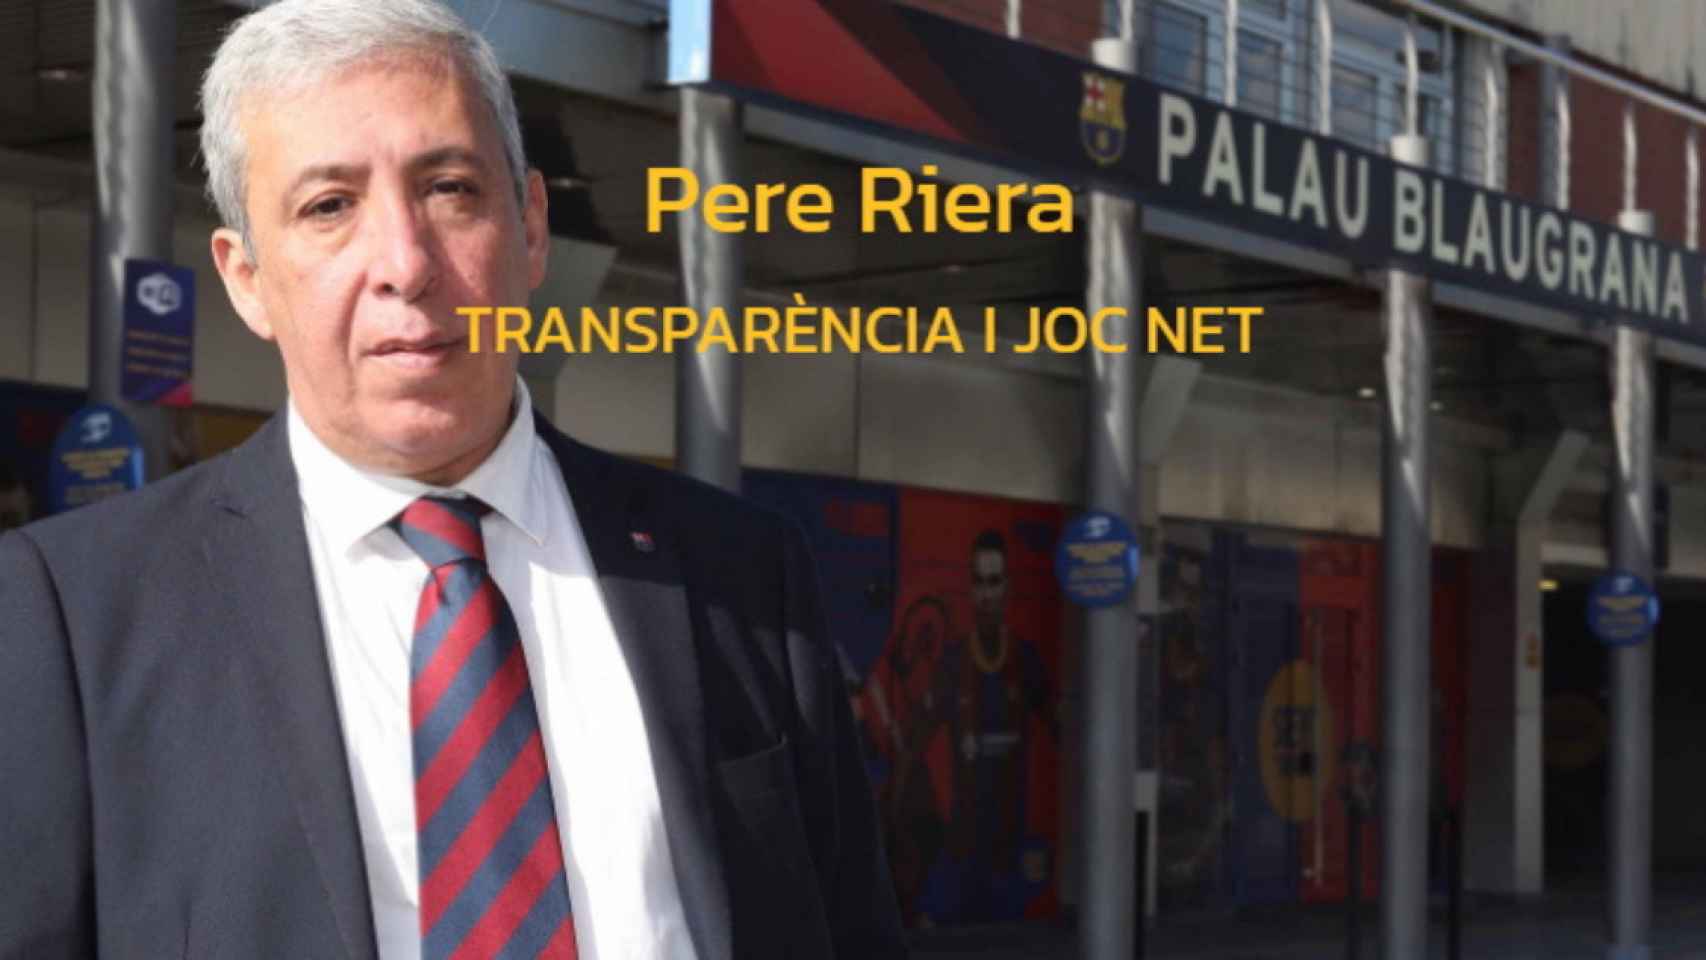 Cartel del precandidato Pere Riera / 'Transparencia i joc net'